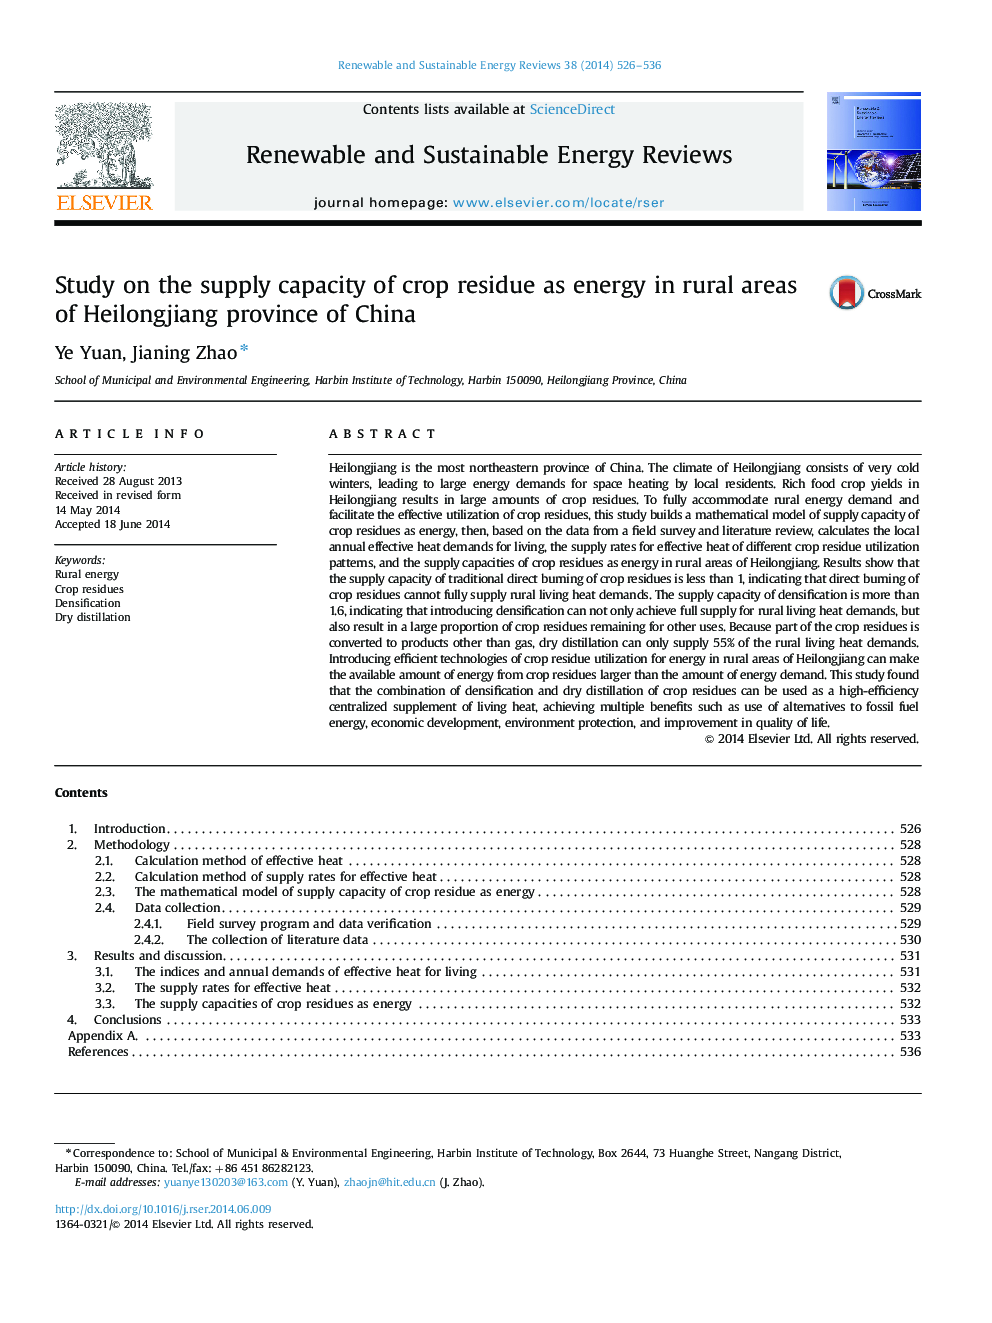 بررسی ظرفیت عرضه بقایای محصول به عنوان انرژی در مناطق روستایی استان هیلونگجیانگ چین 